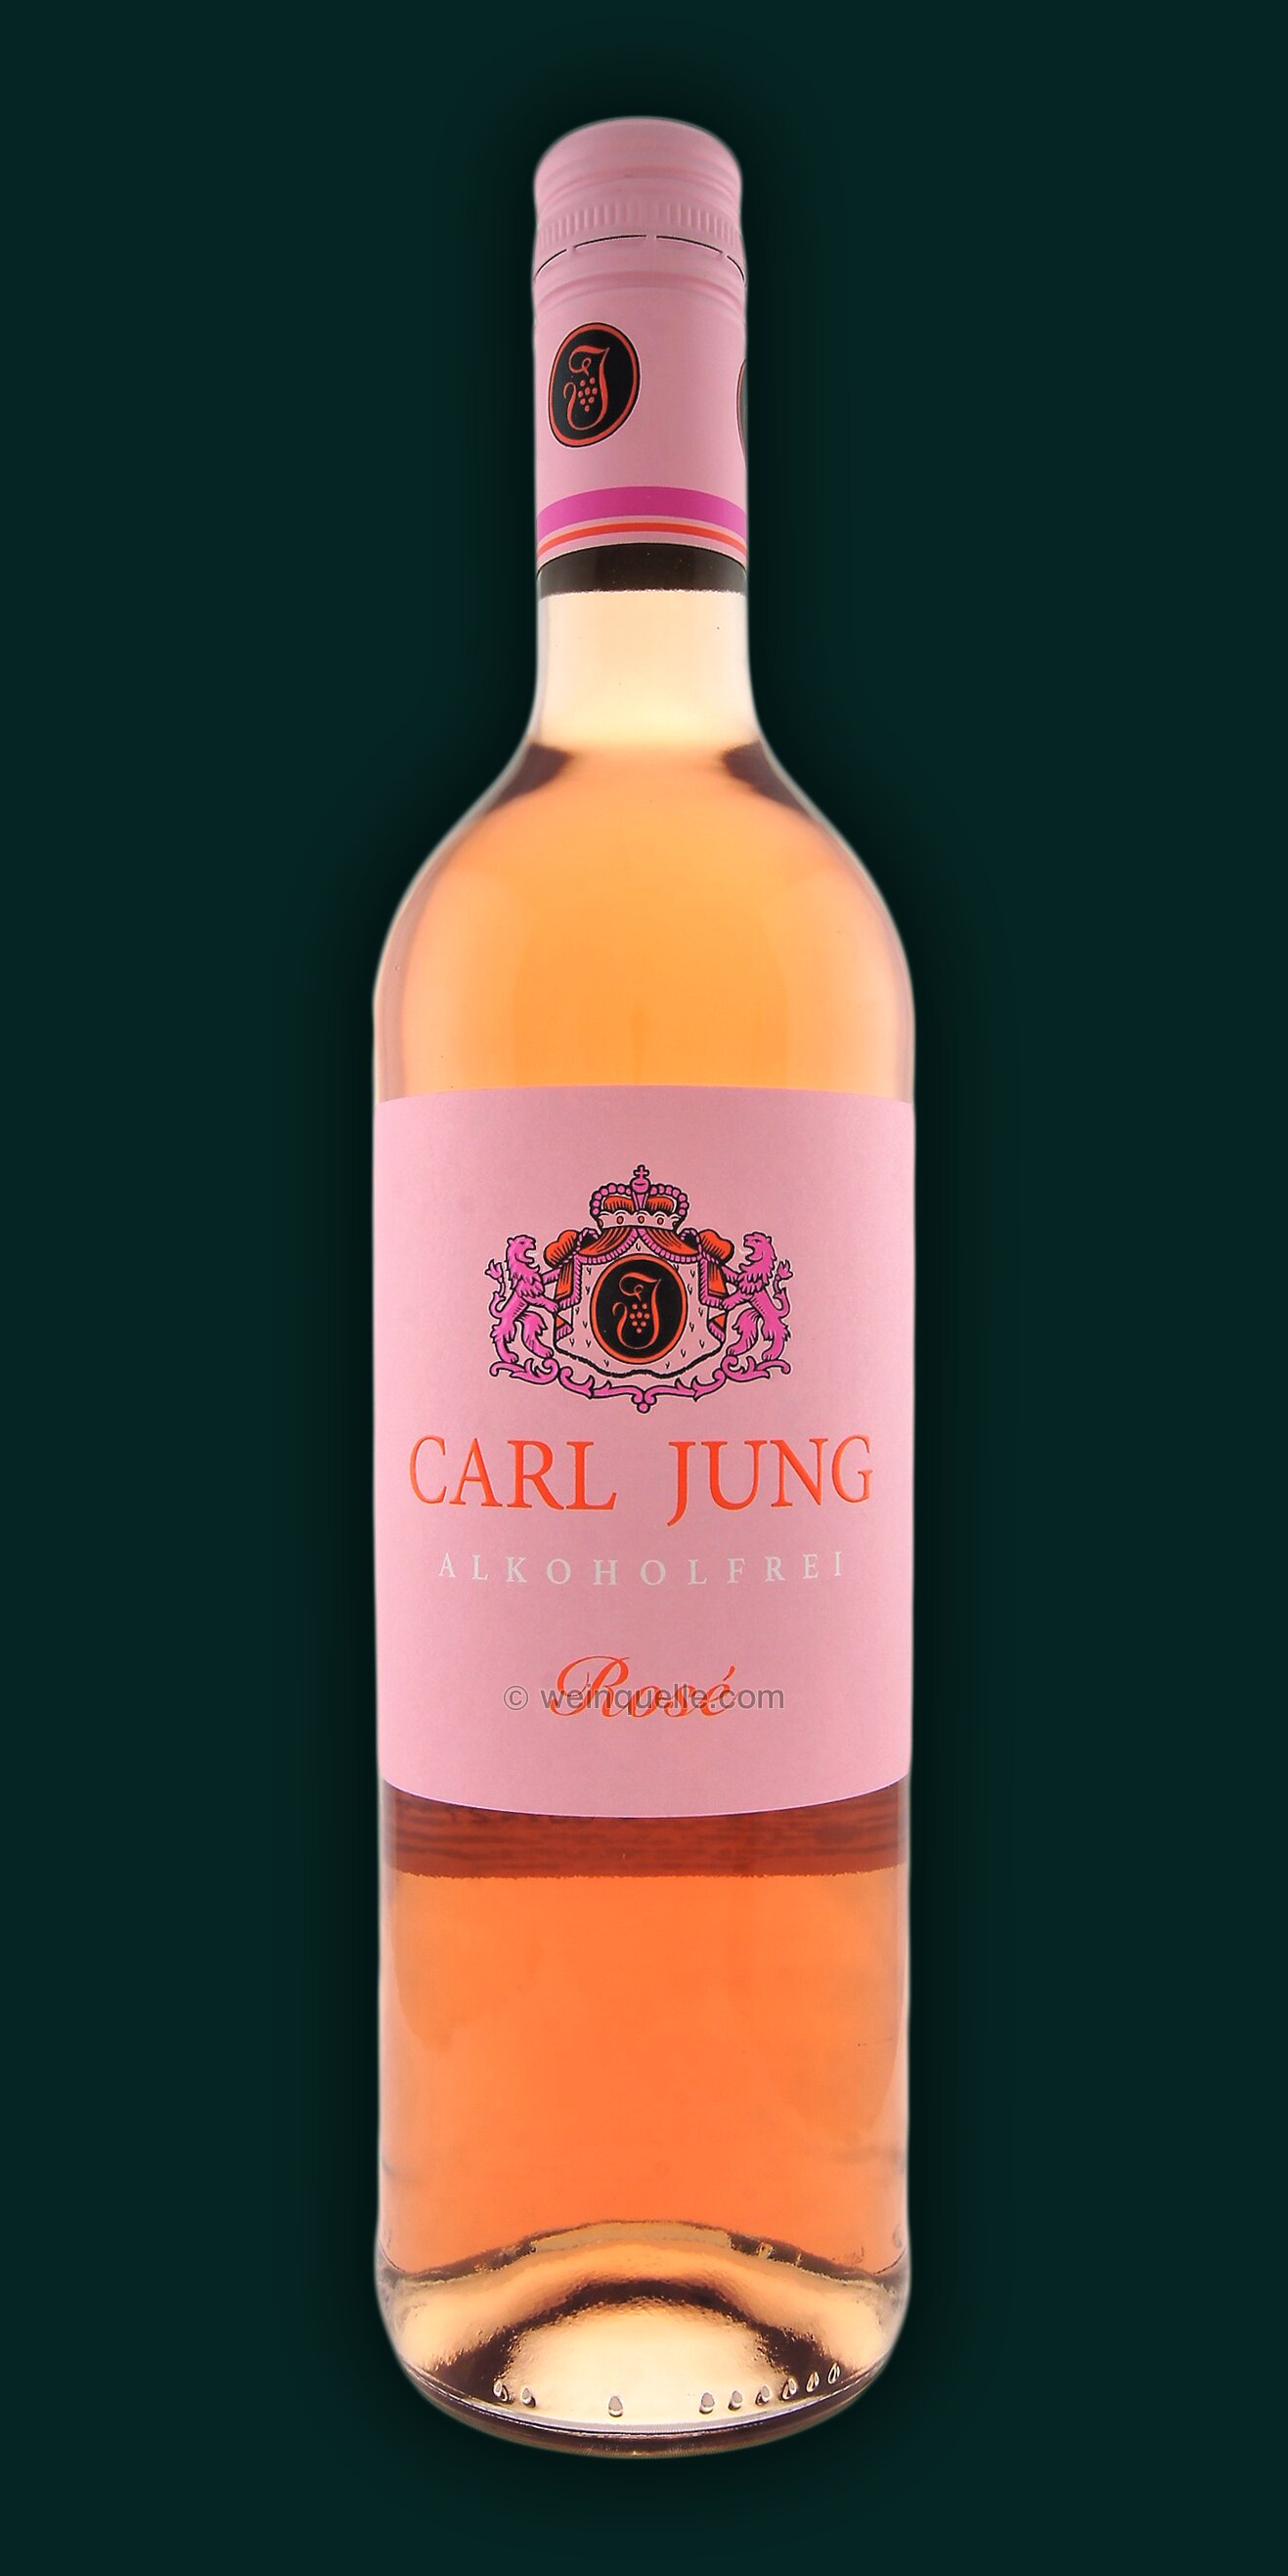 4,95 - € Weinquelle Lühmann Carl Jung Alkoholfrei, Rosé